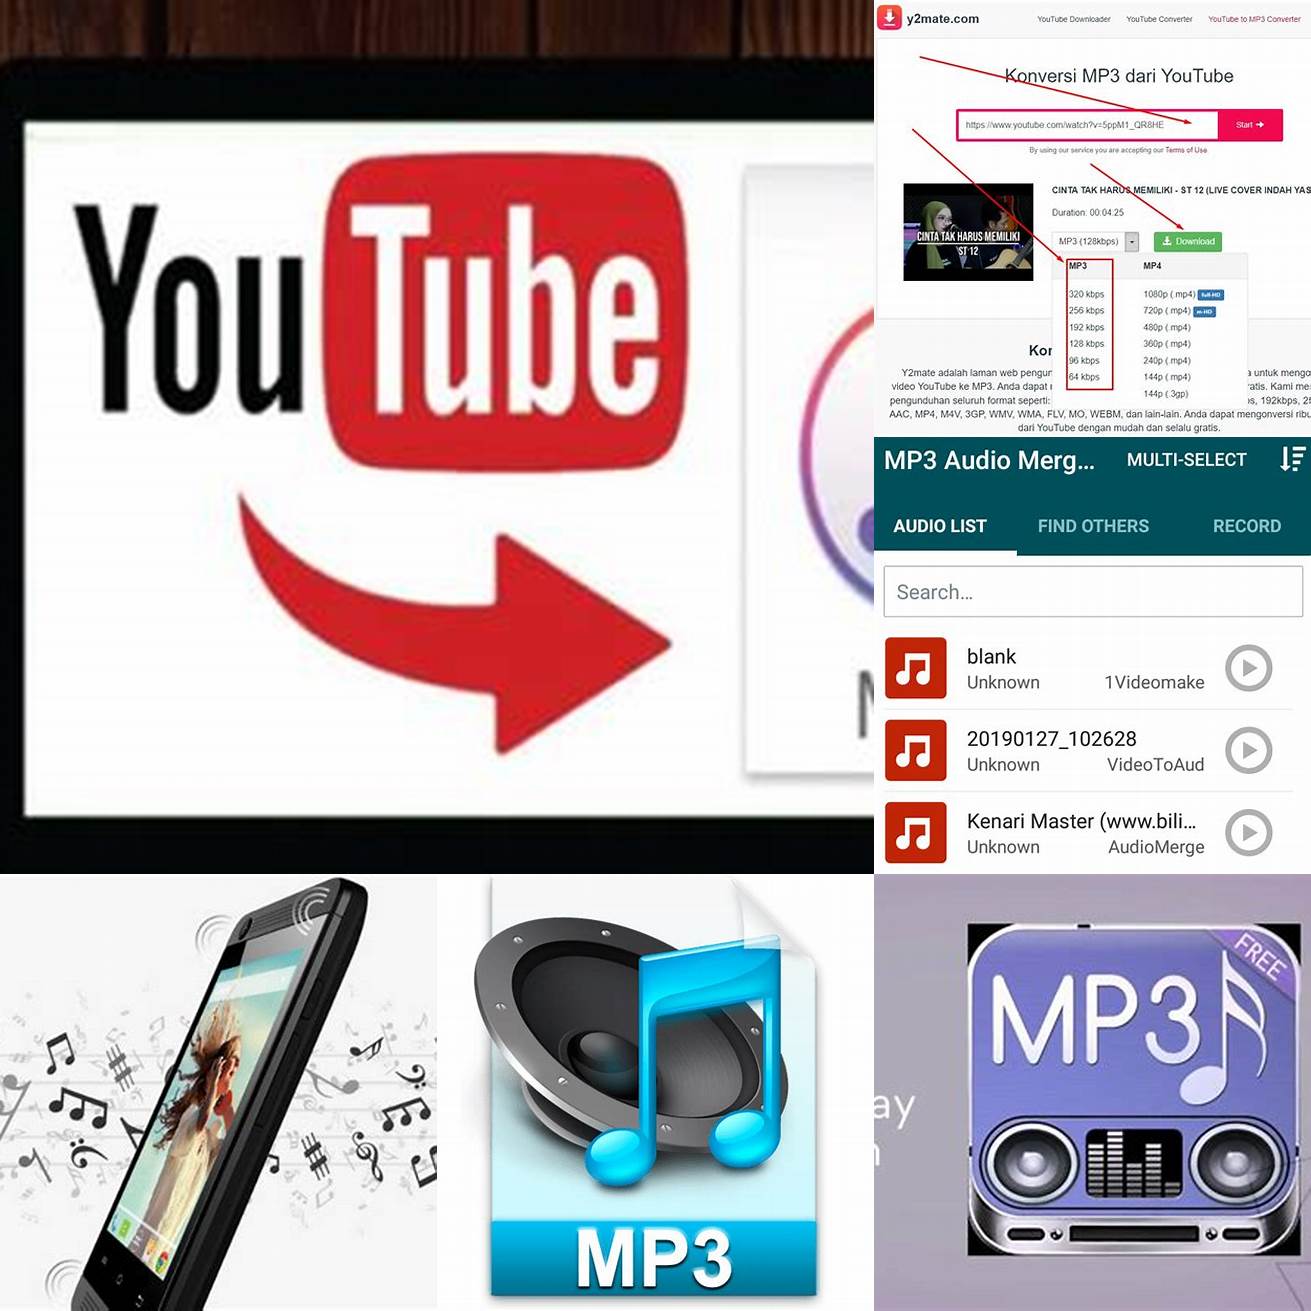 Anda juga dapat mengunduh file audio dari video yang ingin Anda simpan sebagai MP3